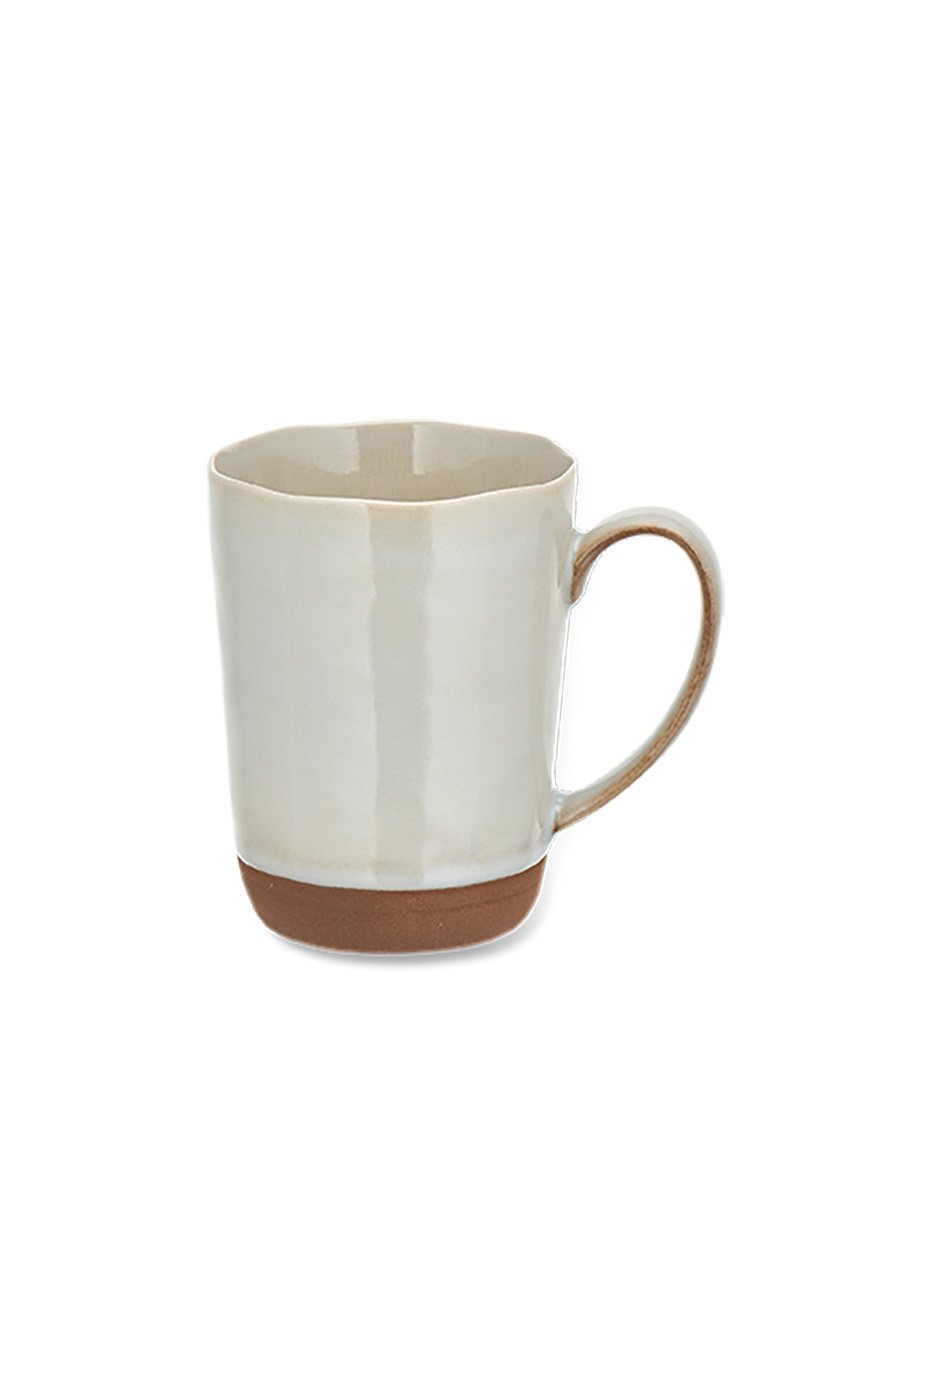 Nkuku Terracotta Edo Large Mug